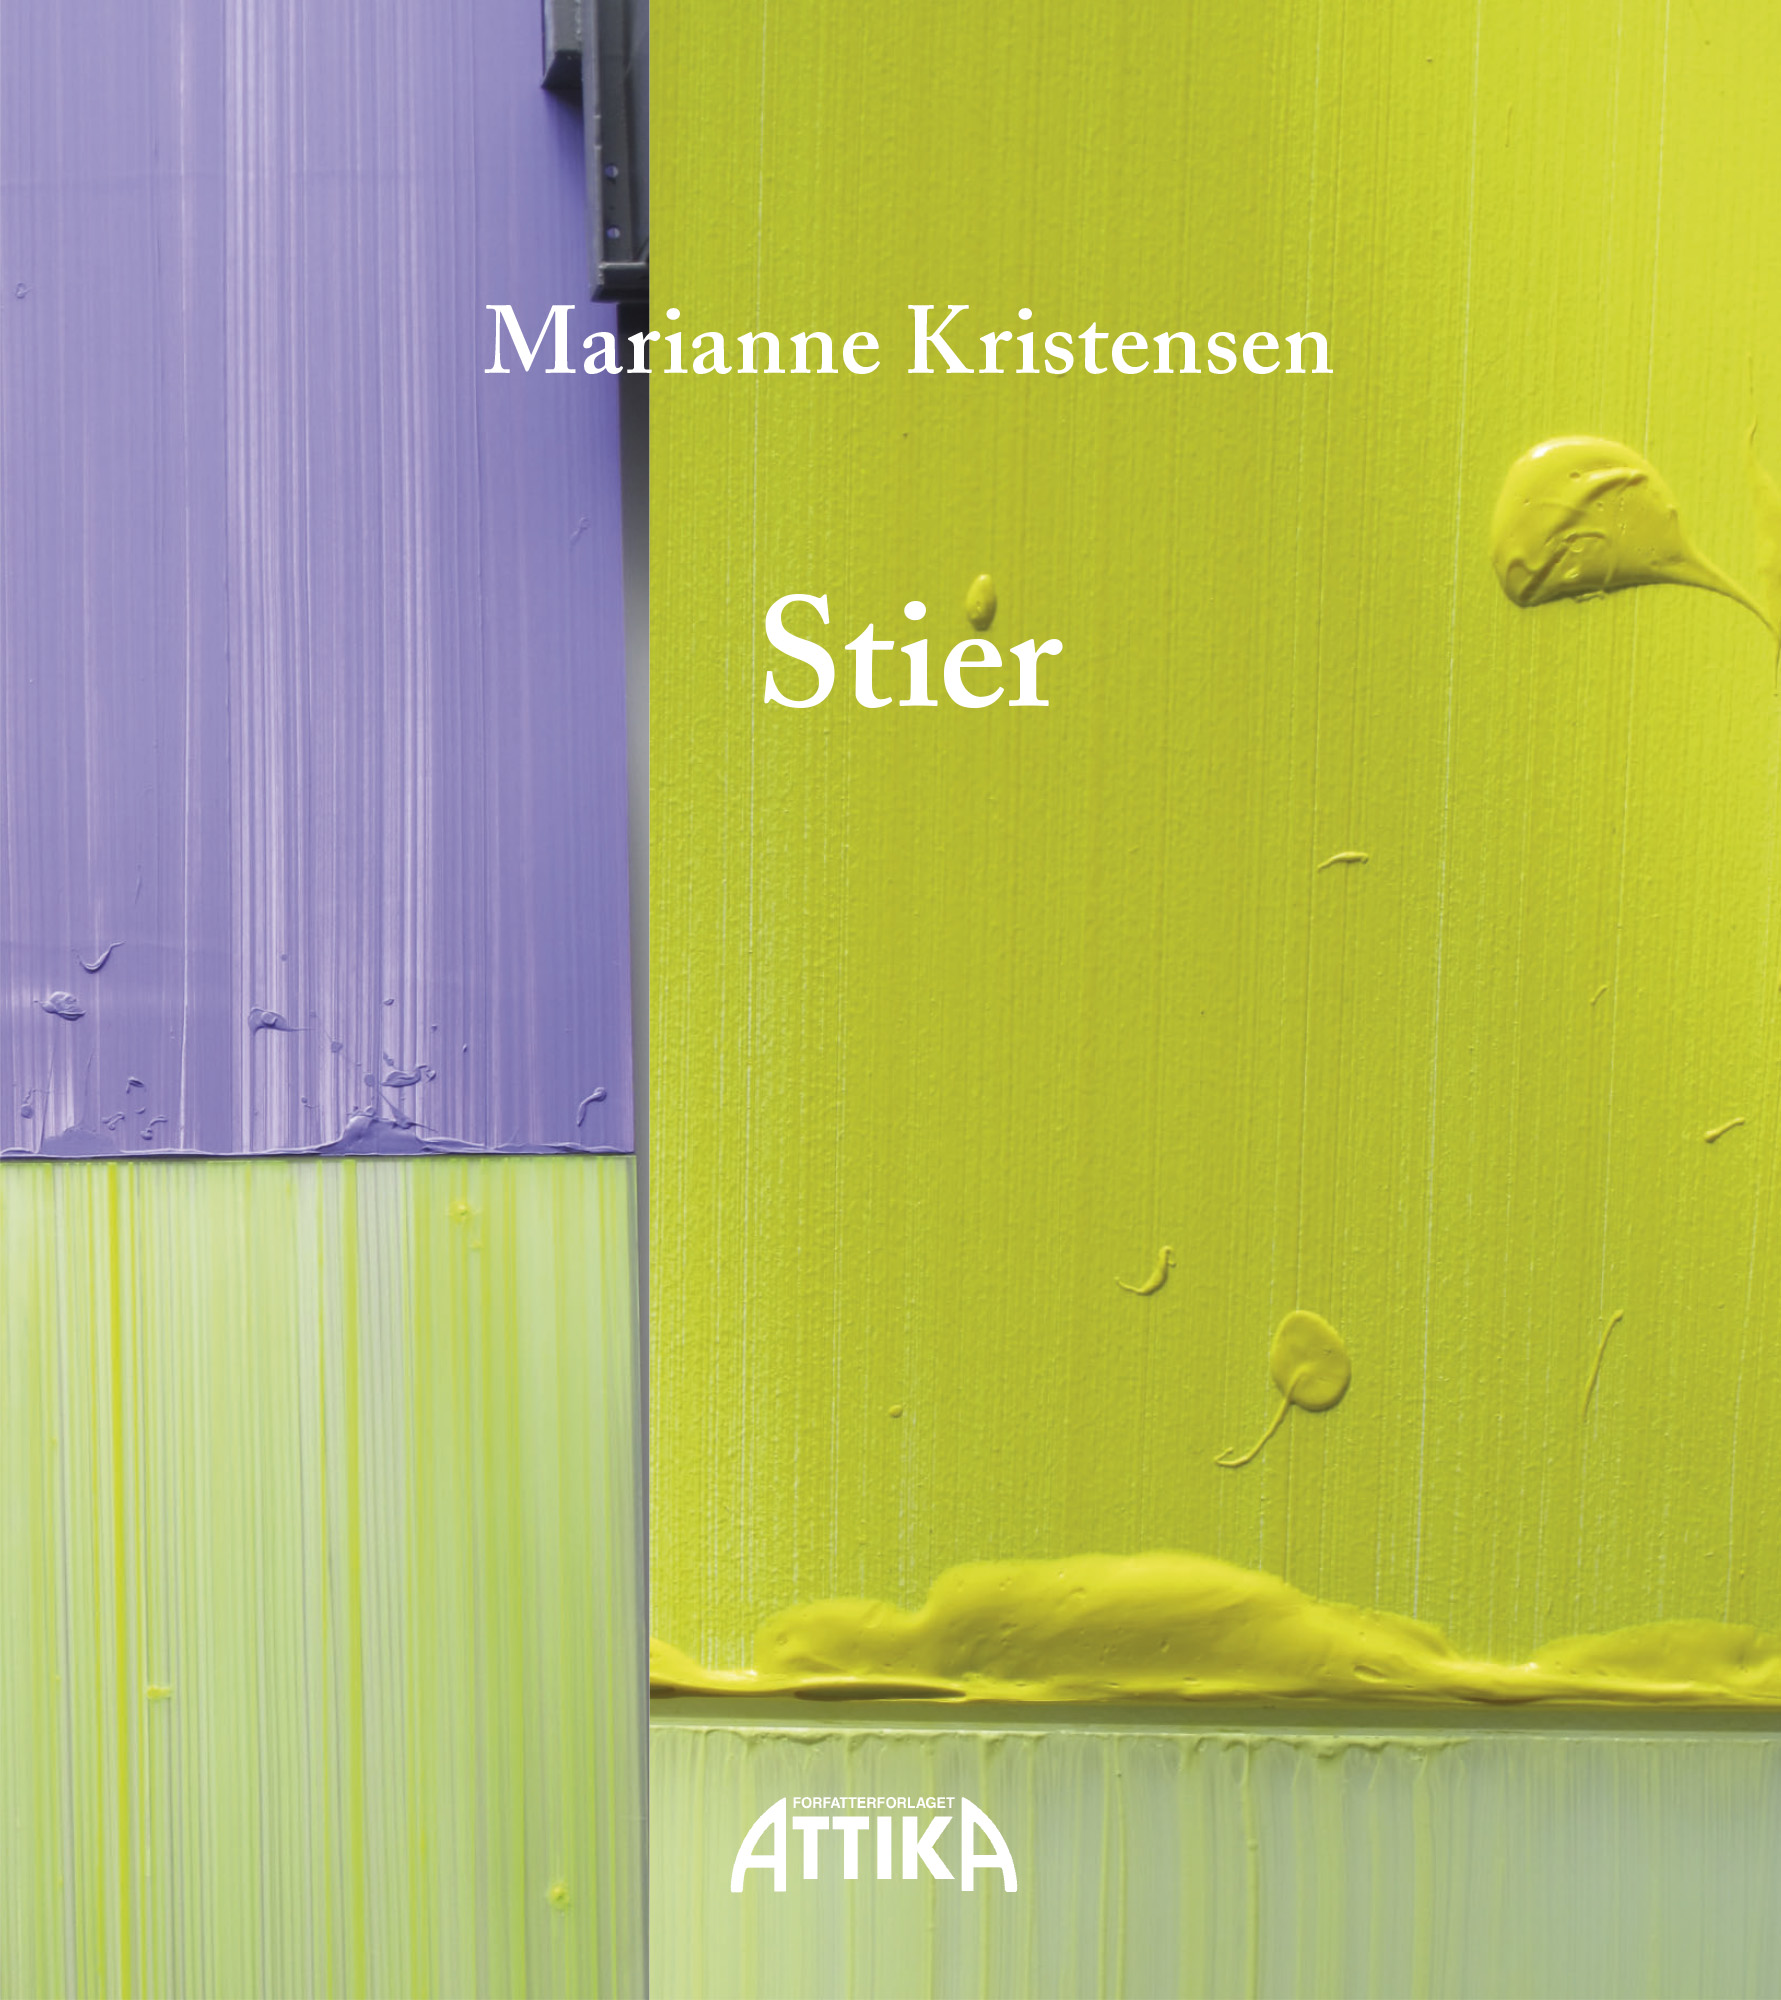 Marianne Kristensen: Stier